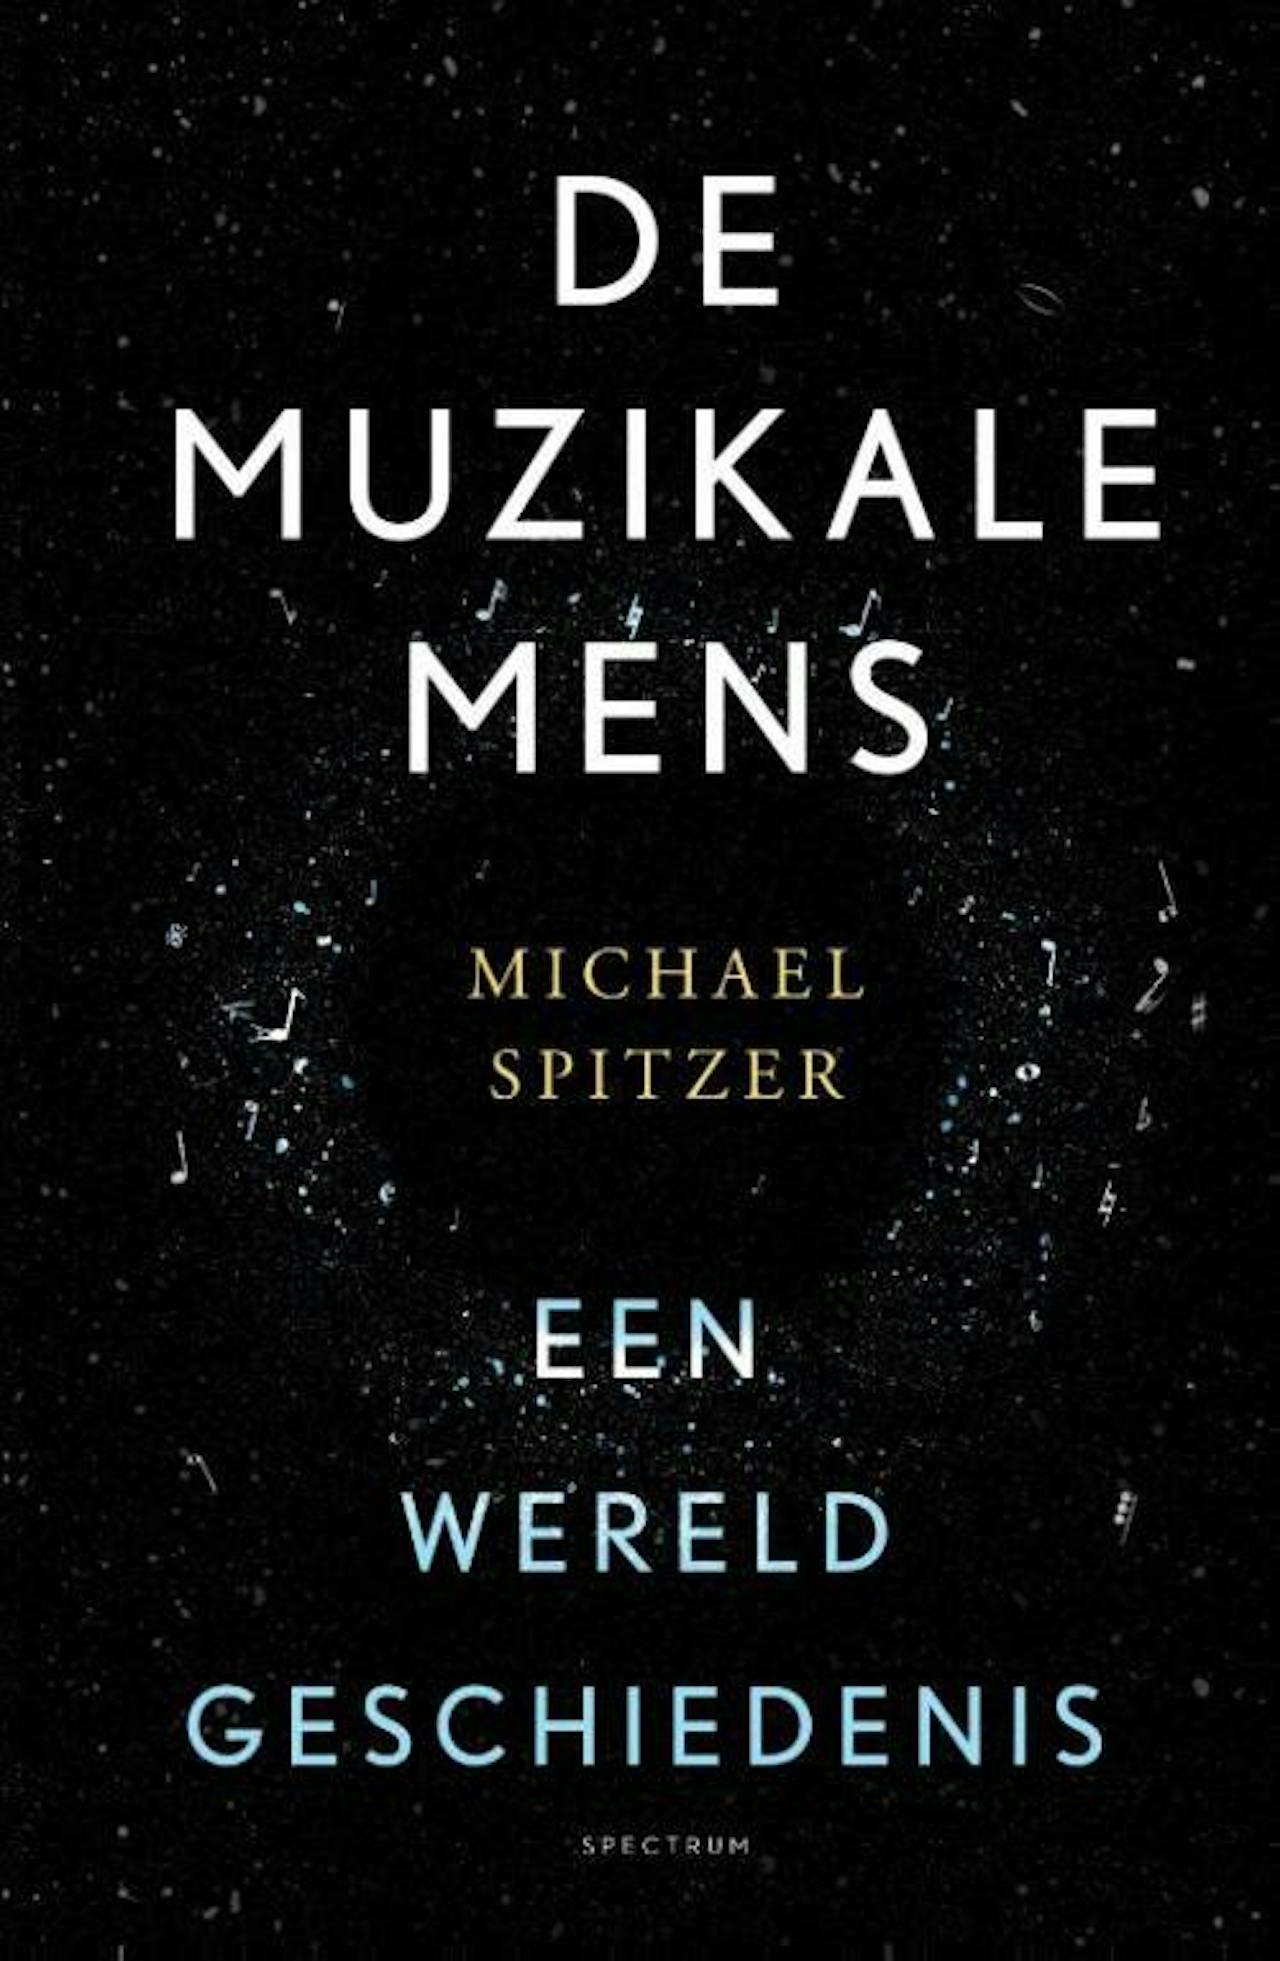 Een cover van audioboek de muzikale mens van Michael Spitzer.